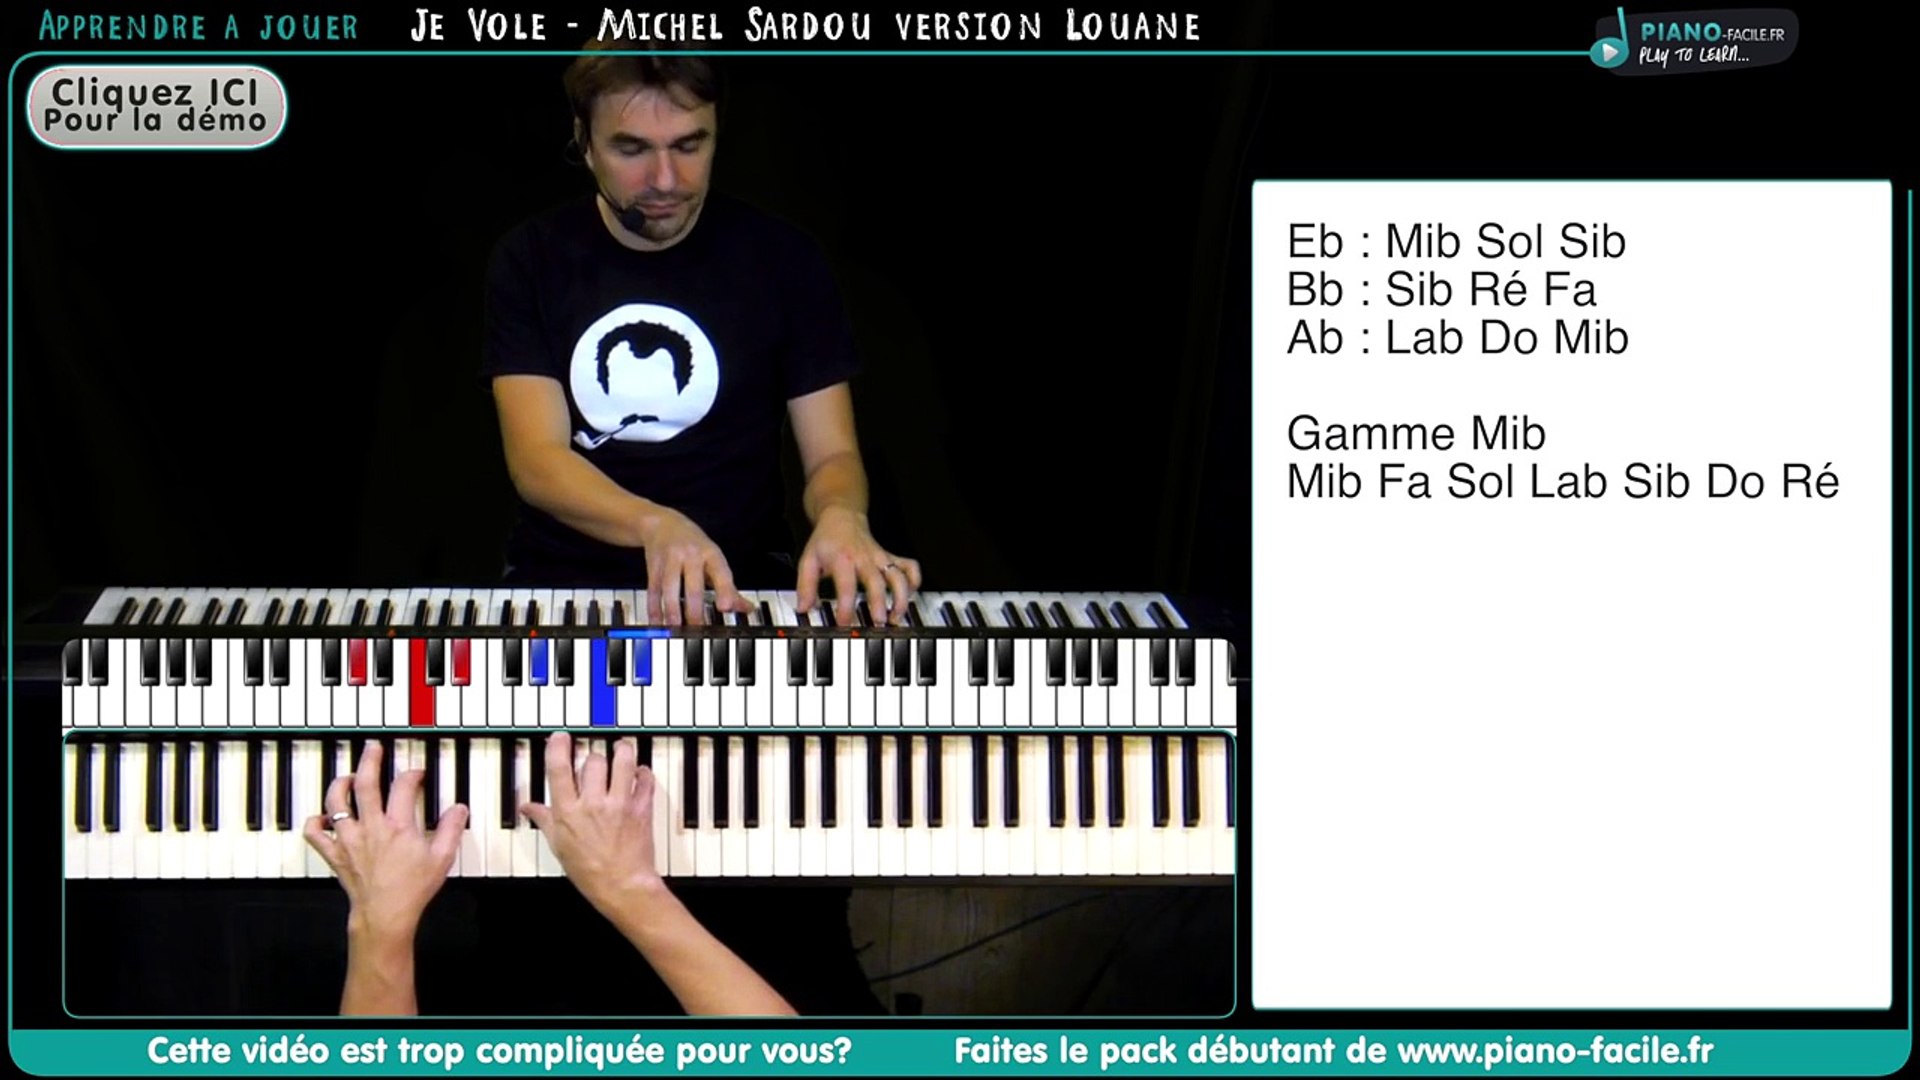 Apprendre je vole version LOUANE (Michel Sardou) - Tuto Piano + Partition –  Видео Dailymotion